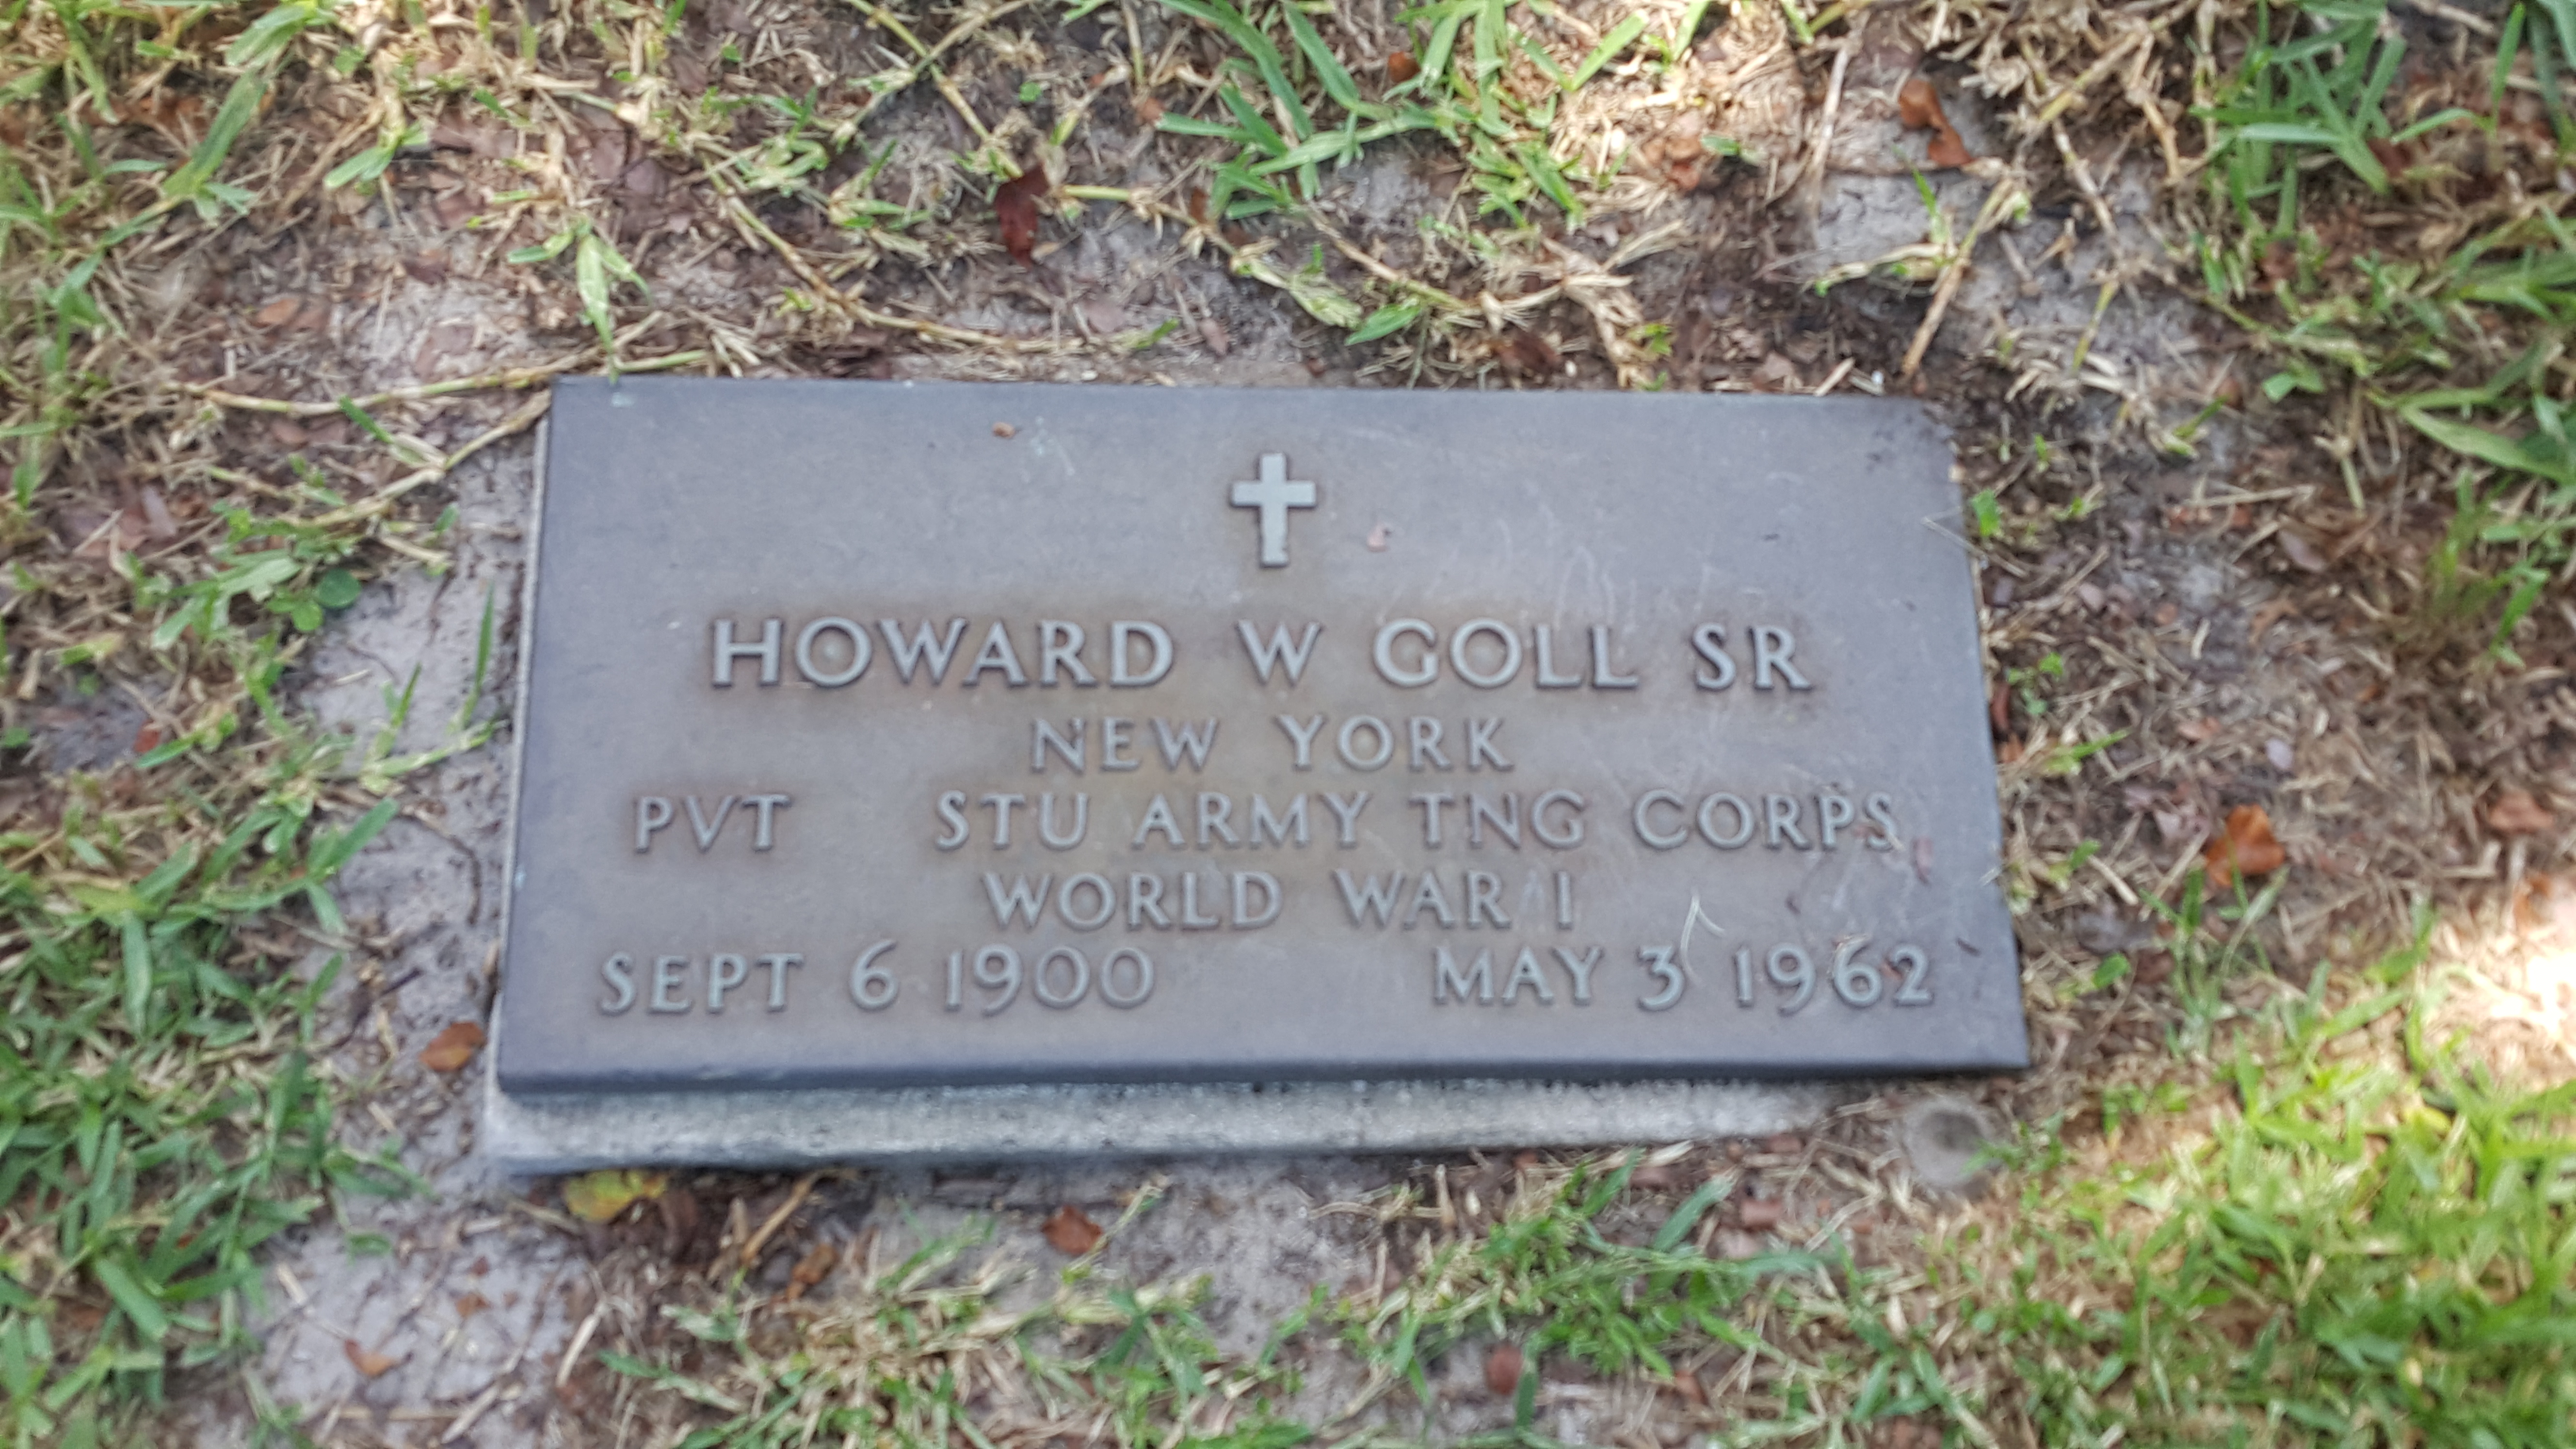 Howard W Goll, Sr